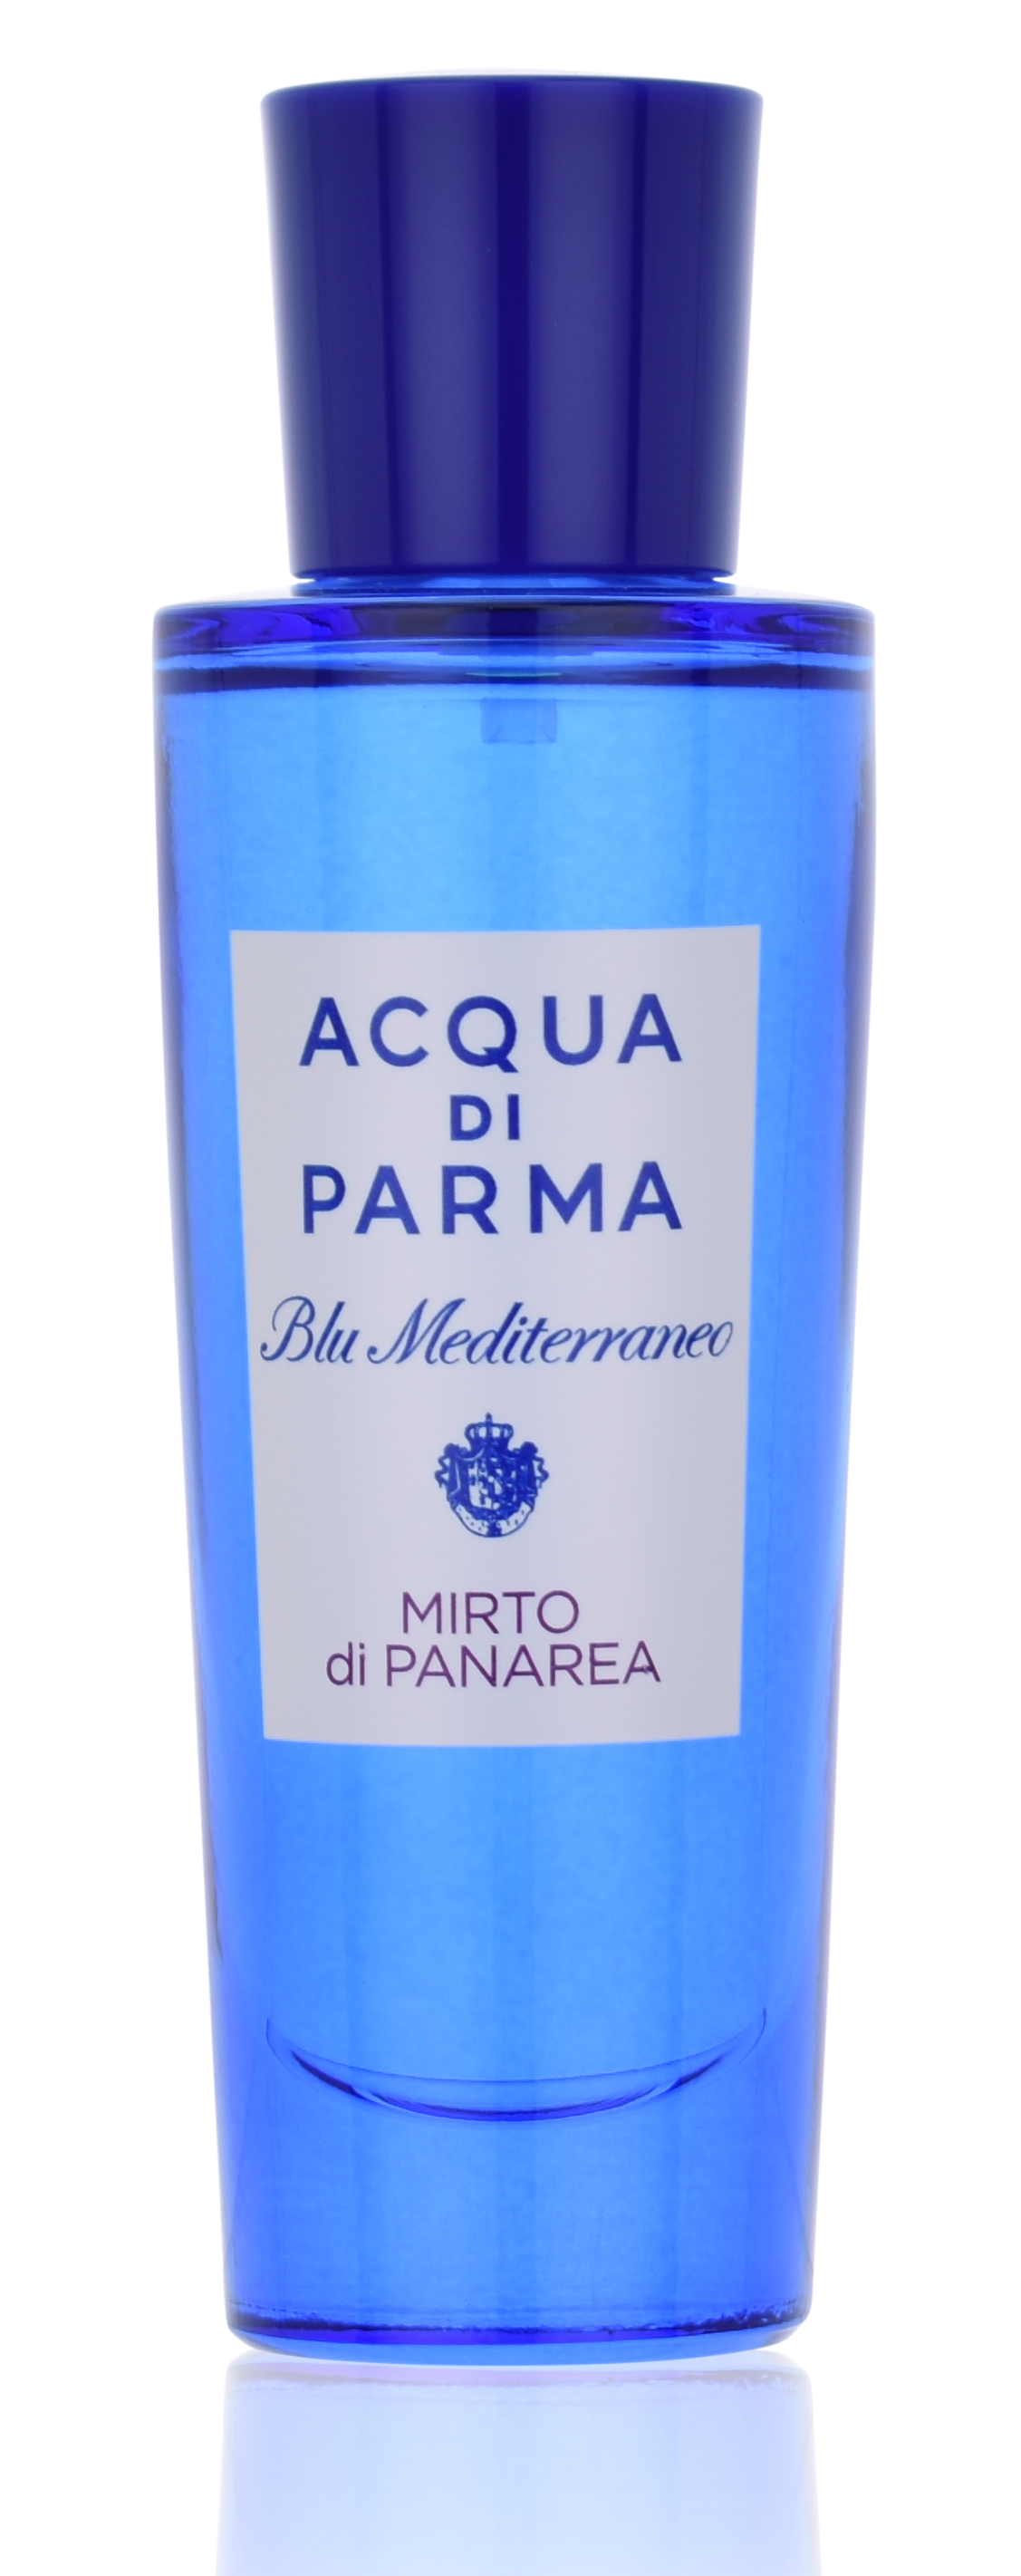 Acqua di Parma Blu Mediterraneo Mirto di Panarea 30 ml Eau de Toilette